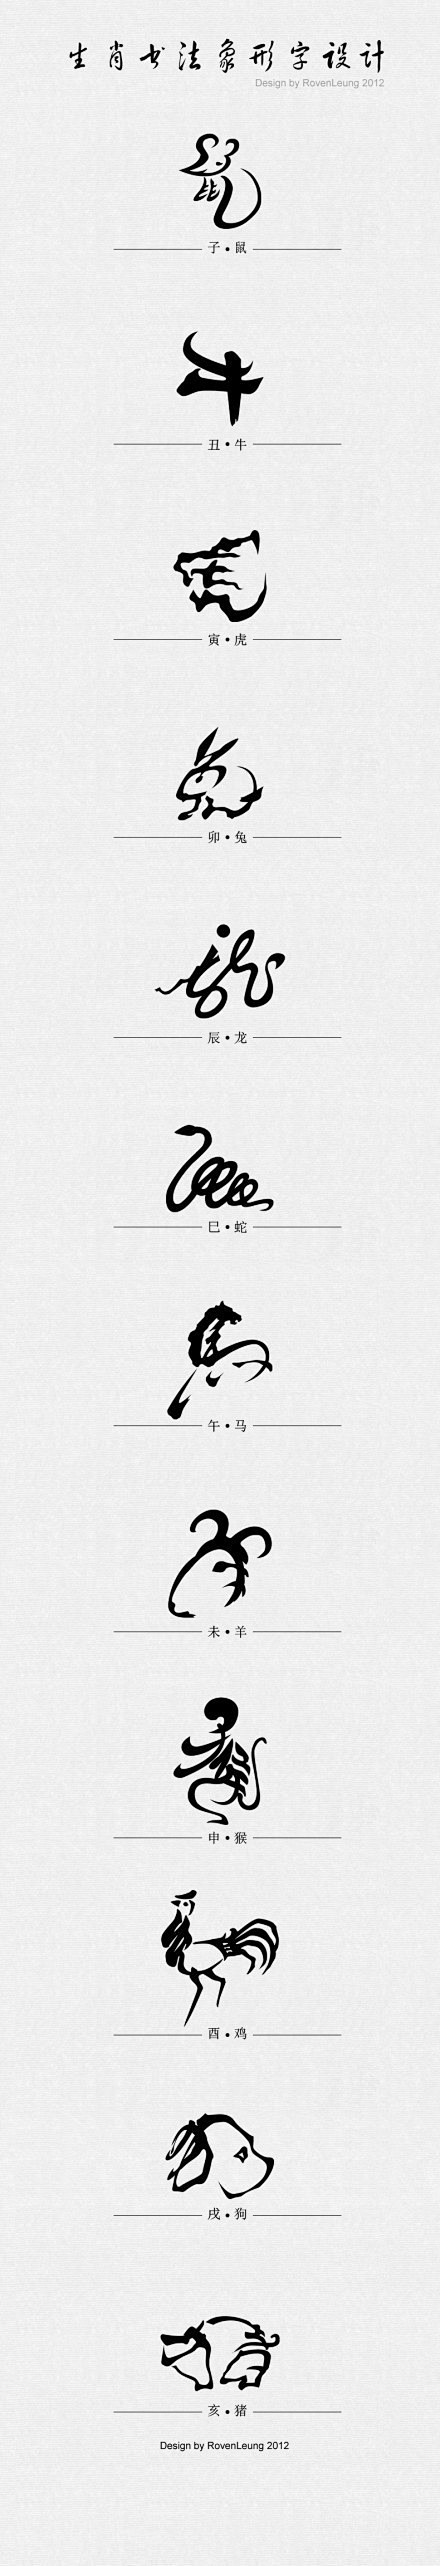 生肖书法象形字设计。